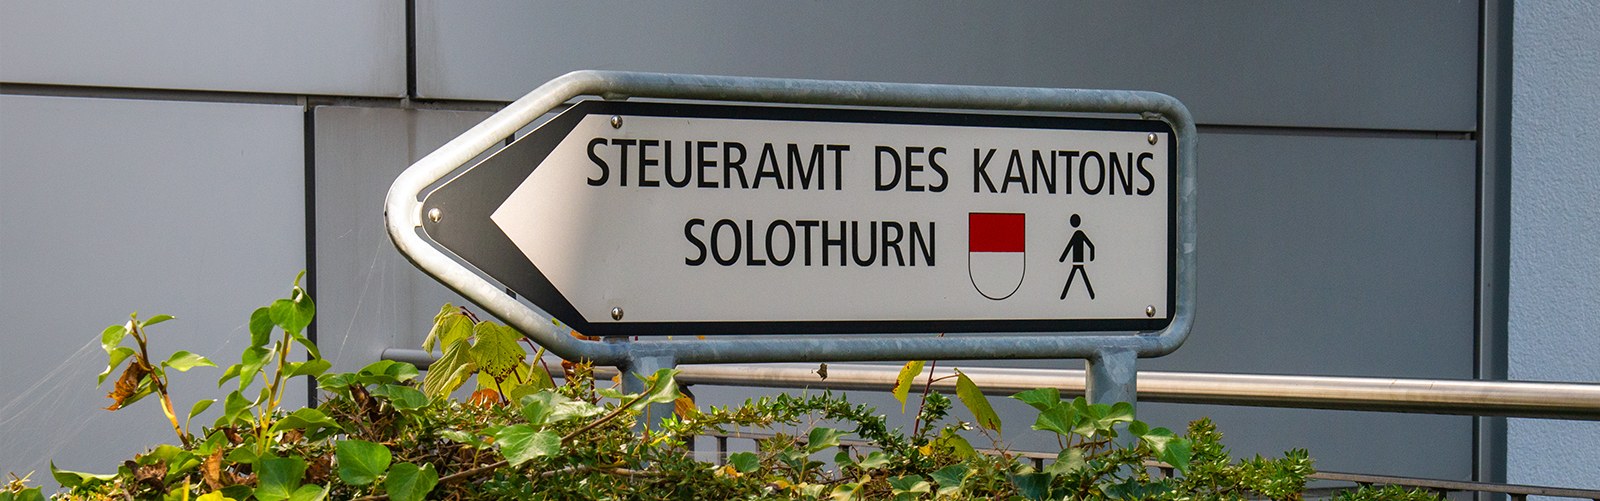 Steueramt Kanton Solothurn - Wegweiser